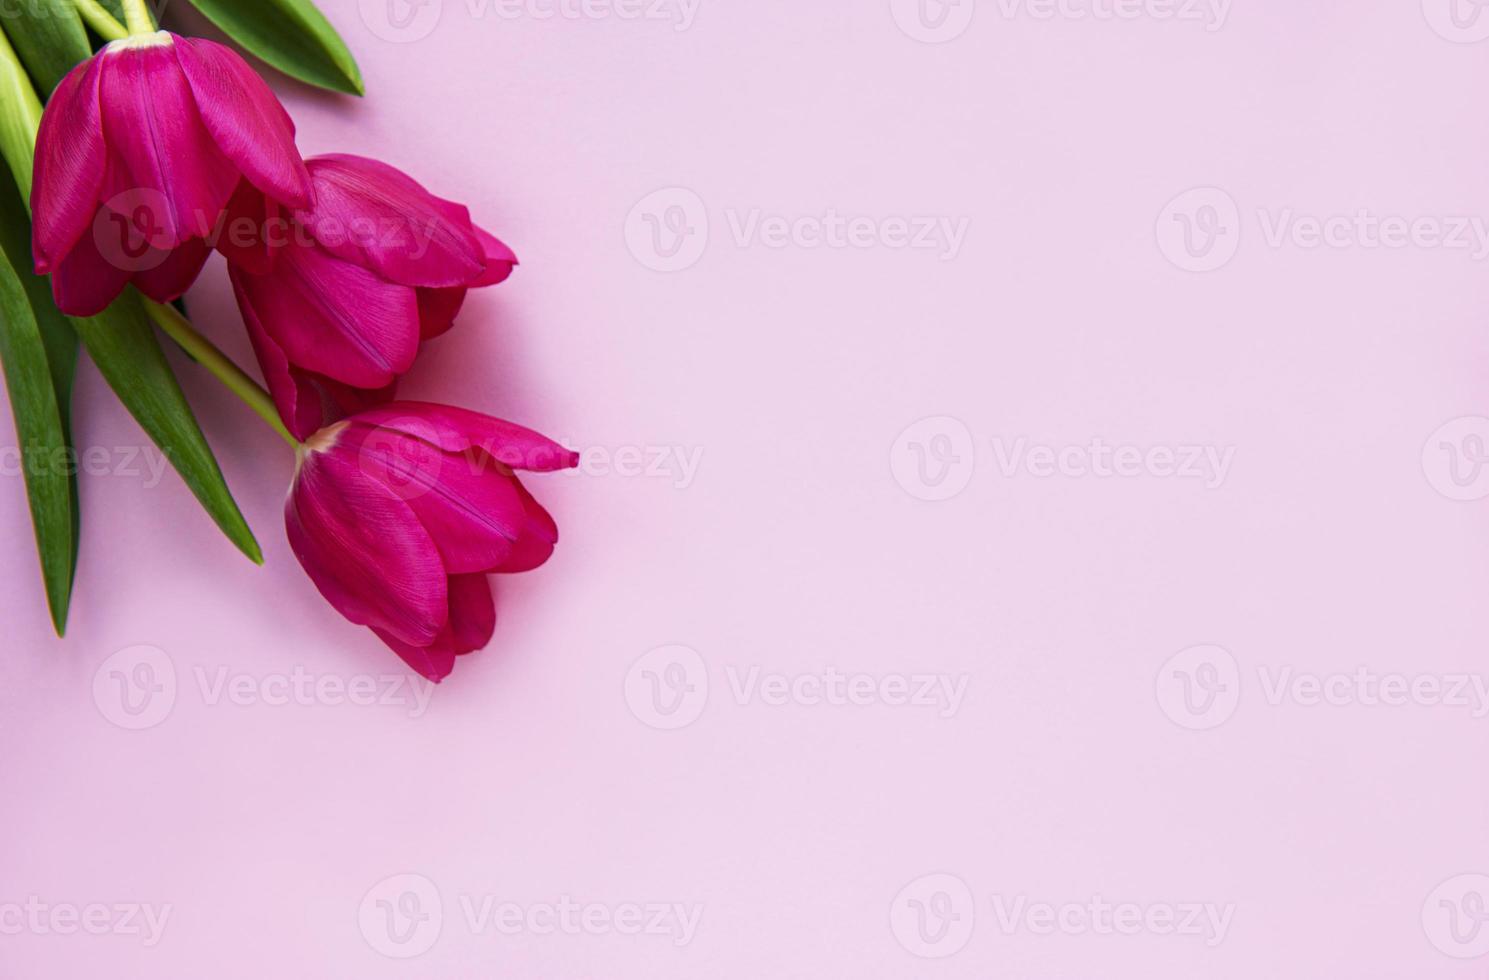 schöner Tulpenstrauß foto